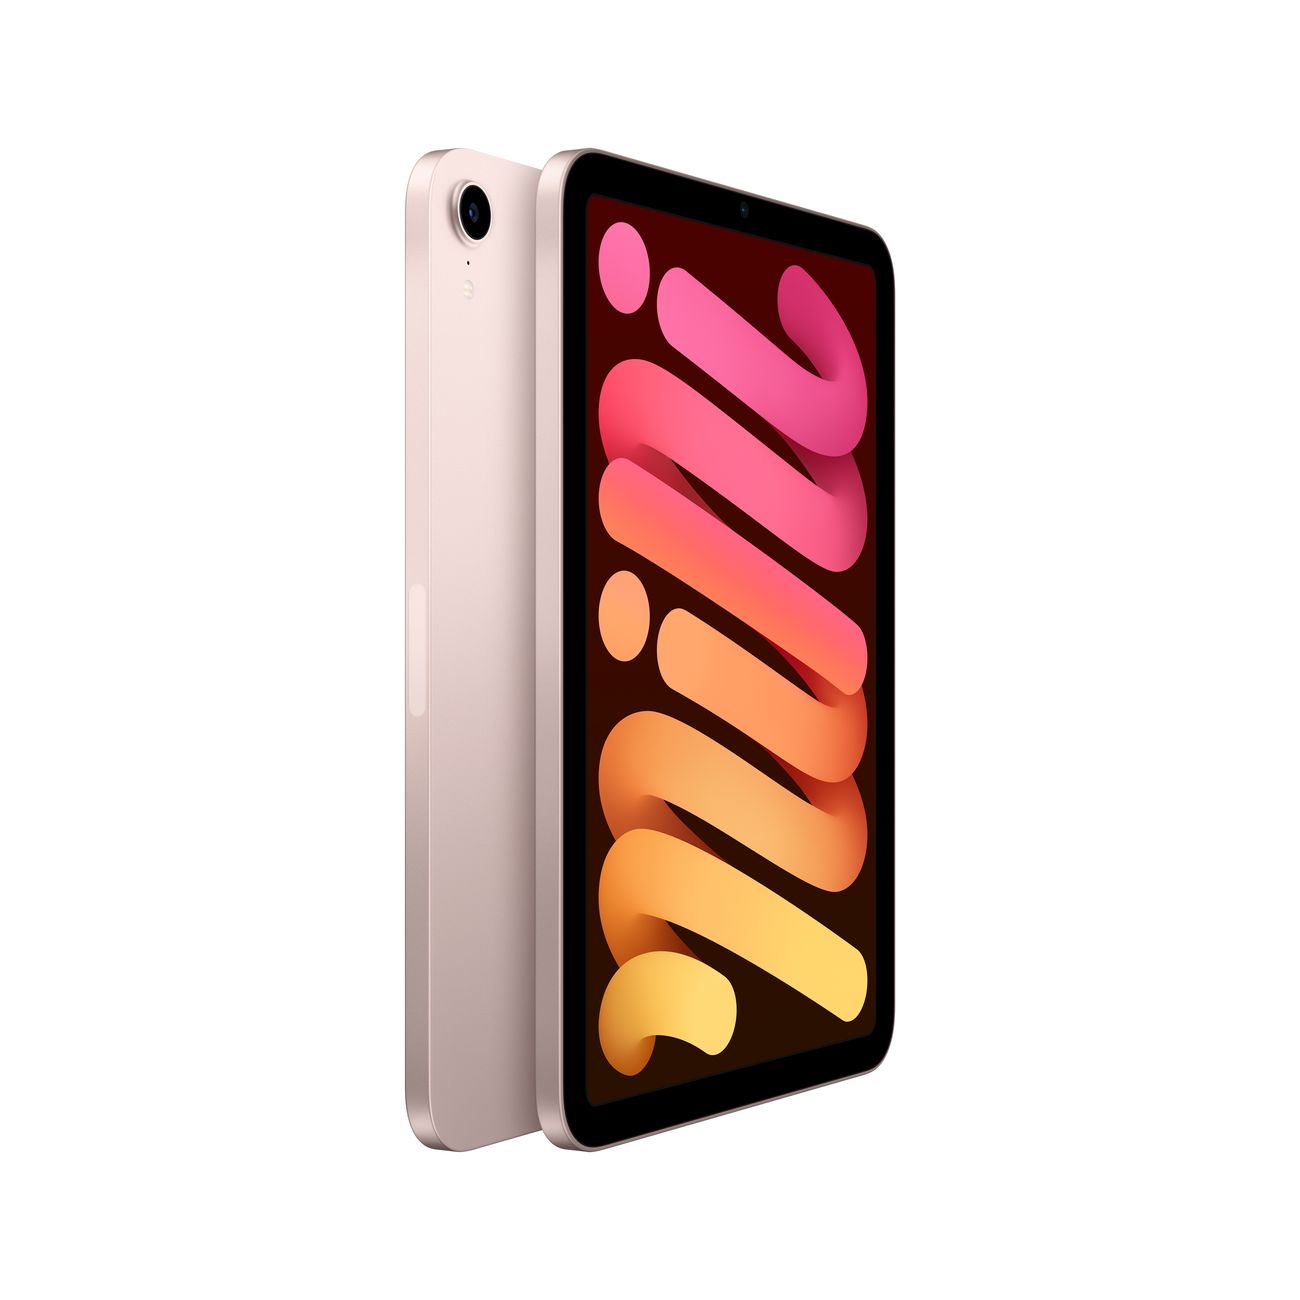 Купить планшет apple ipad mini wi-fi 64gb pink (mlwl3) Apple iPad mini в официальном магазине Apple, Samsung, Xiaomi. iPixel.ru Купить, заказ, кредит, рассрочка, отзывы,  характеристики, цена,  фотографии, в подарок.